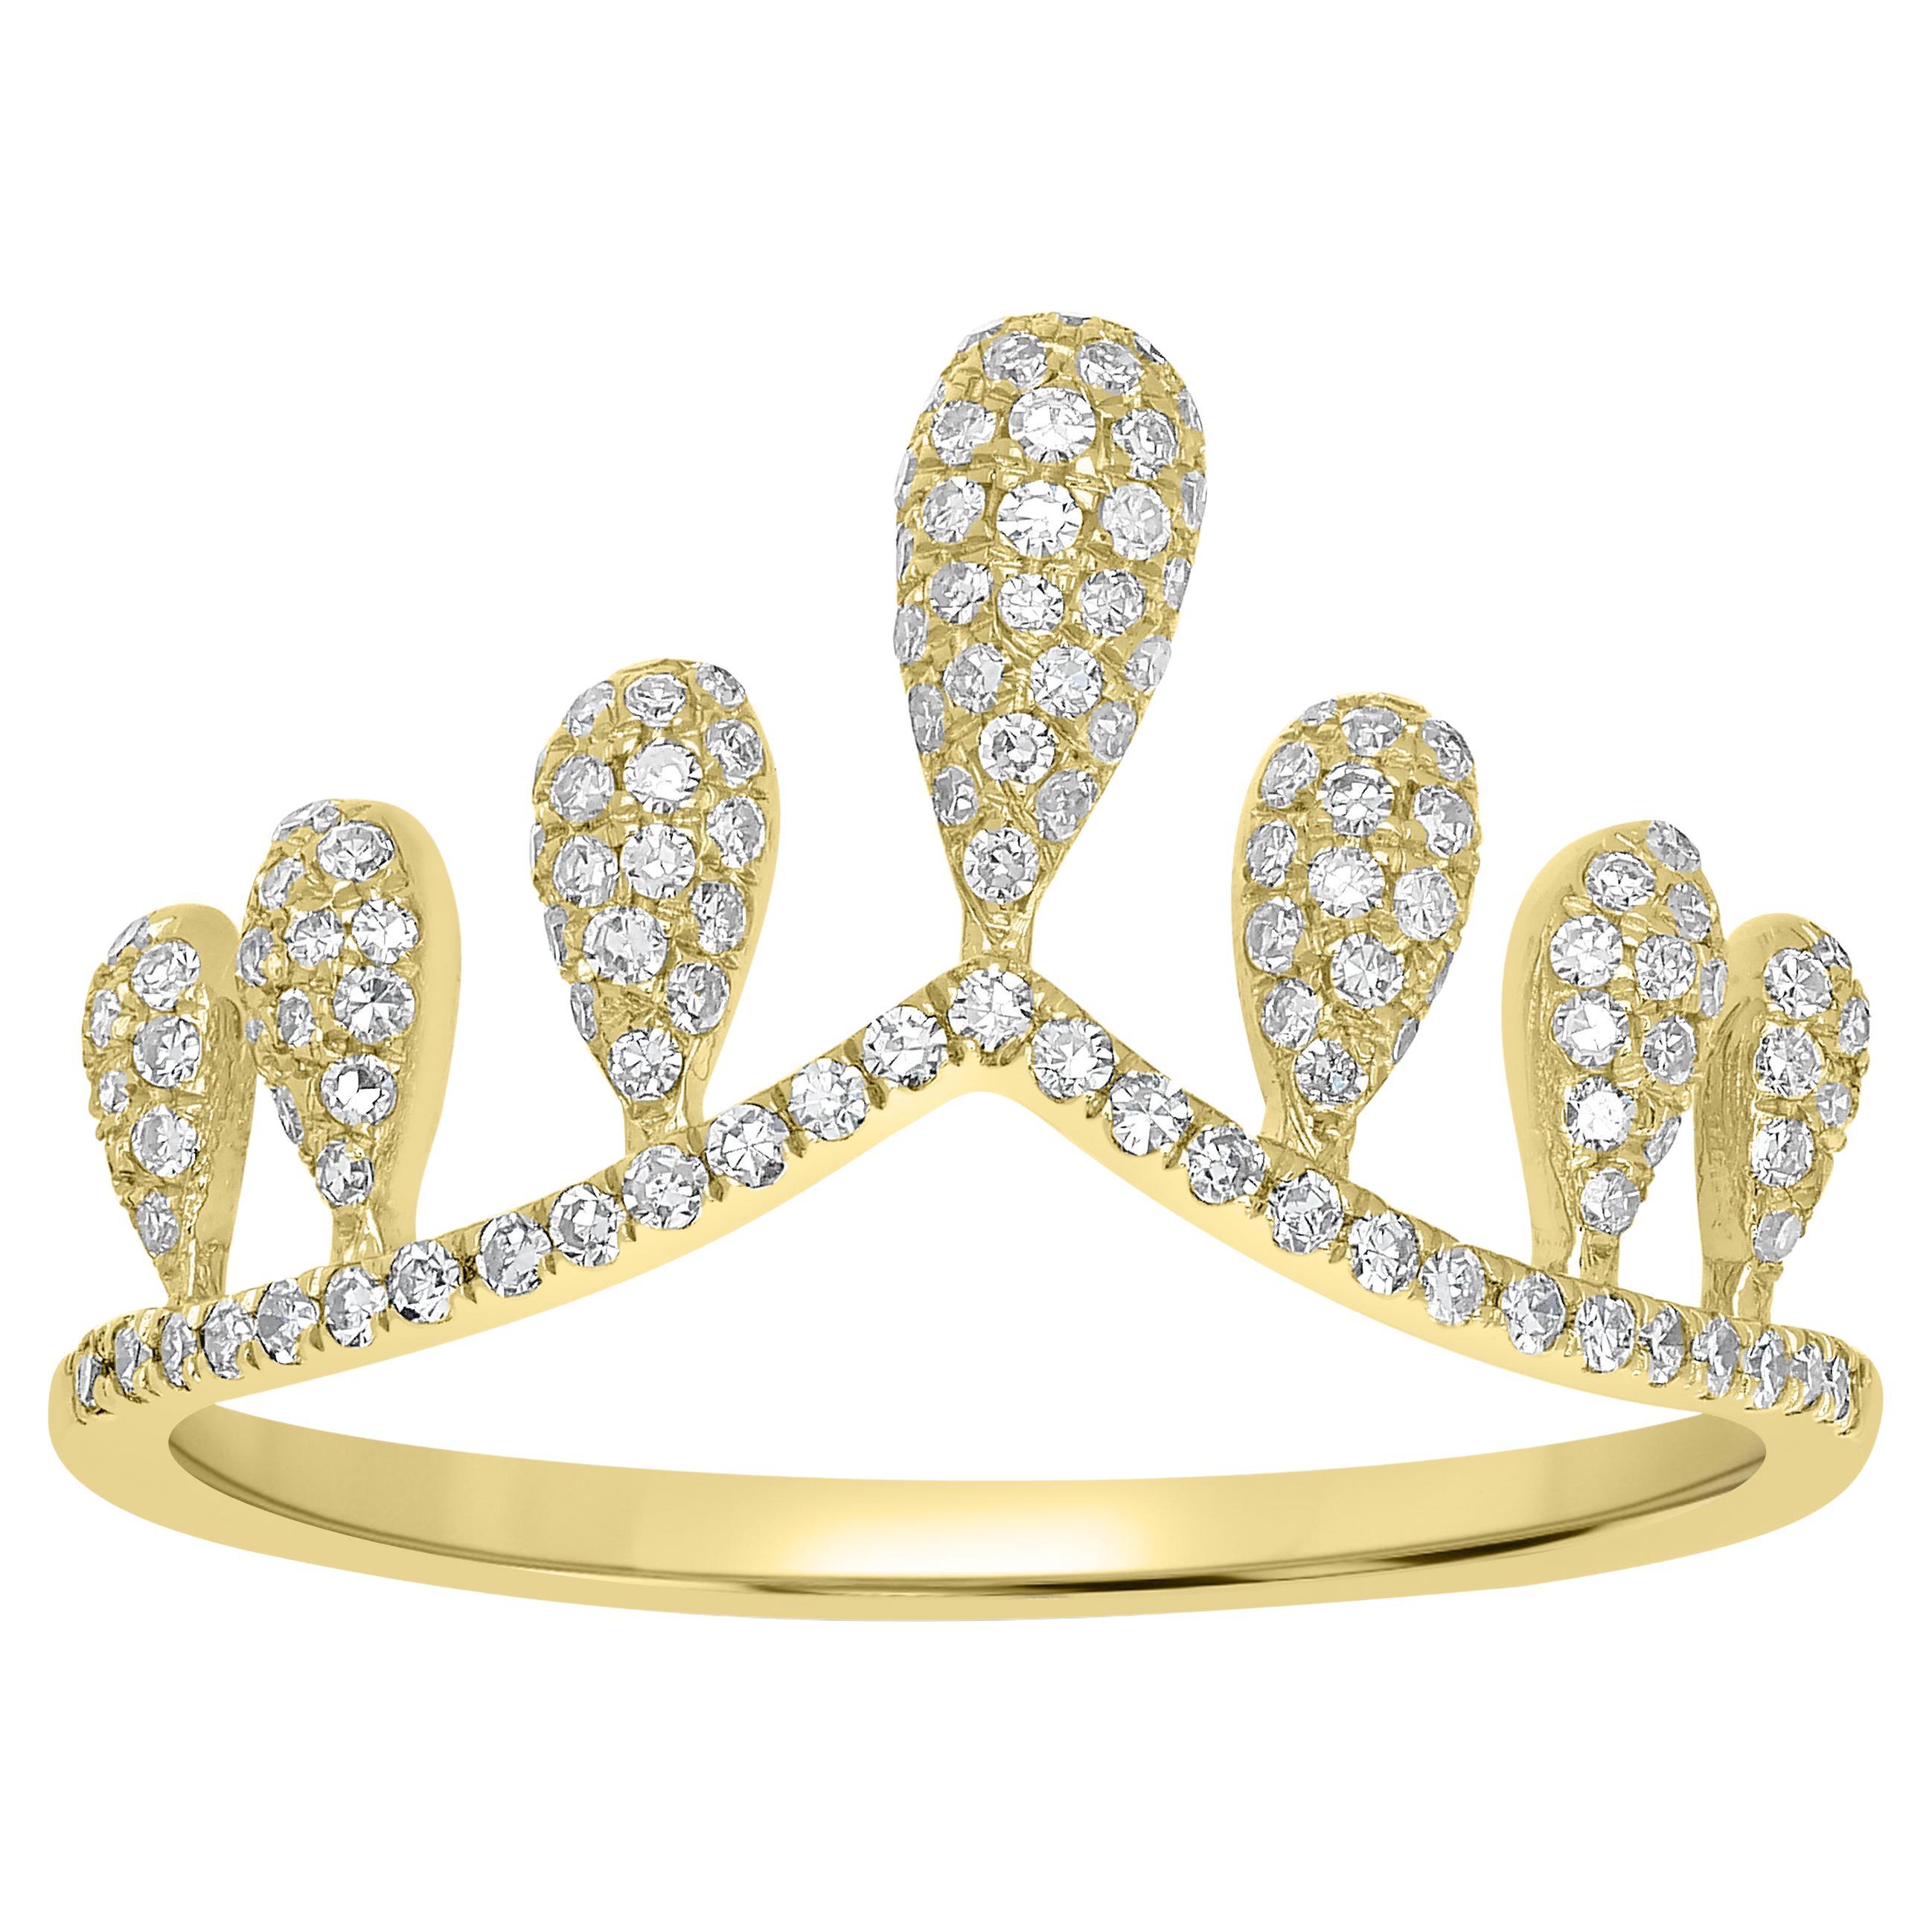 Luxle 14k Gold 3/8 Carat T.W. Diamond Crown Ring